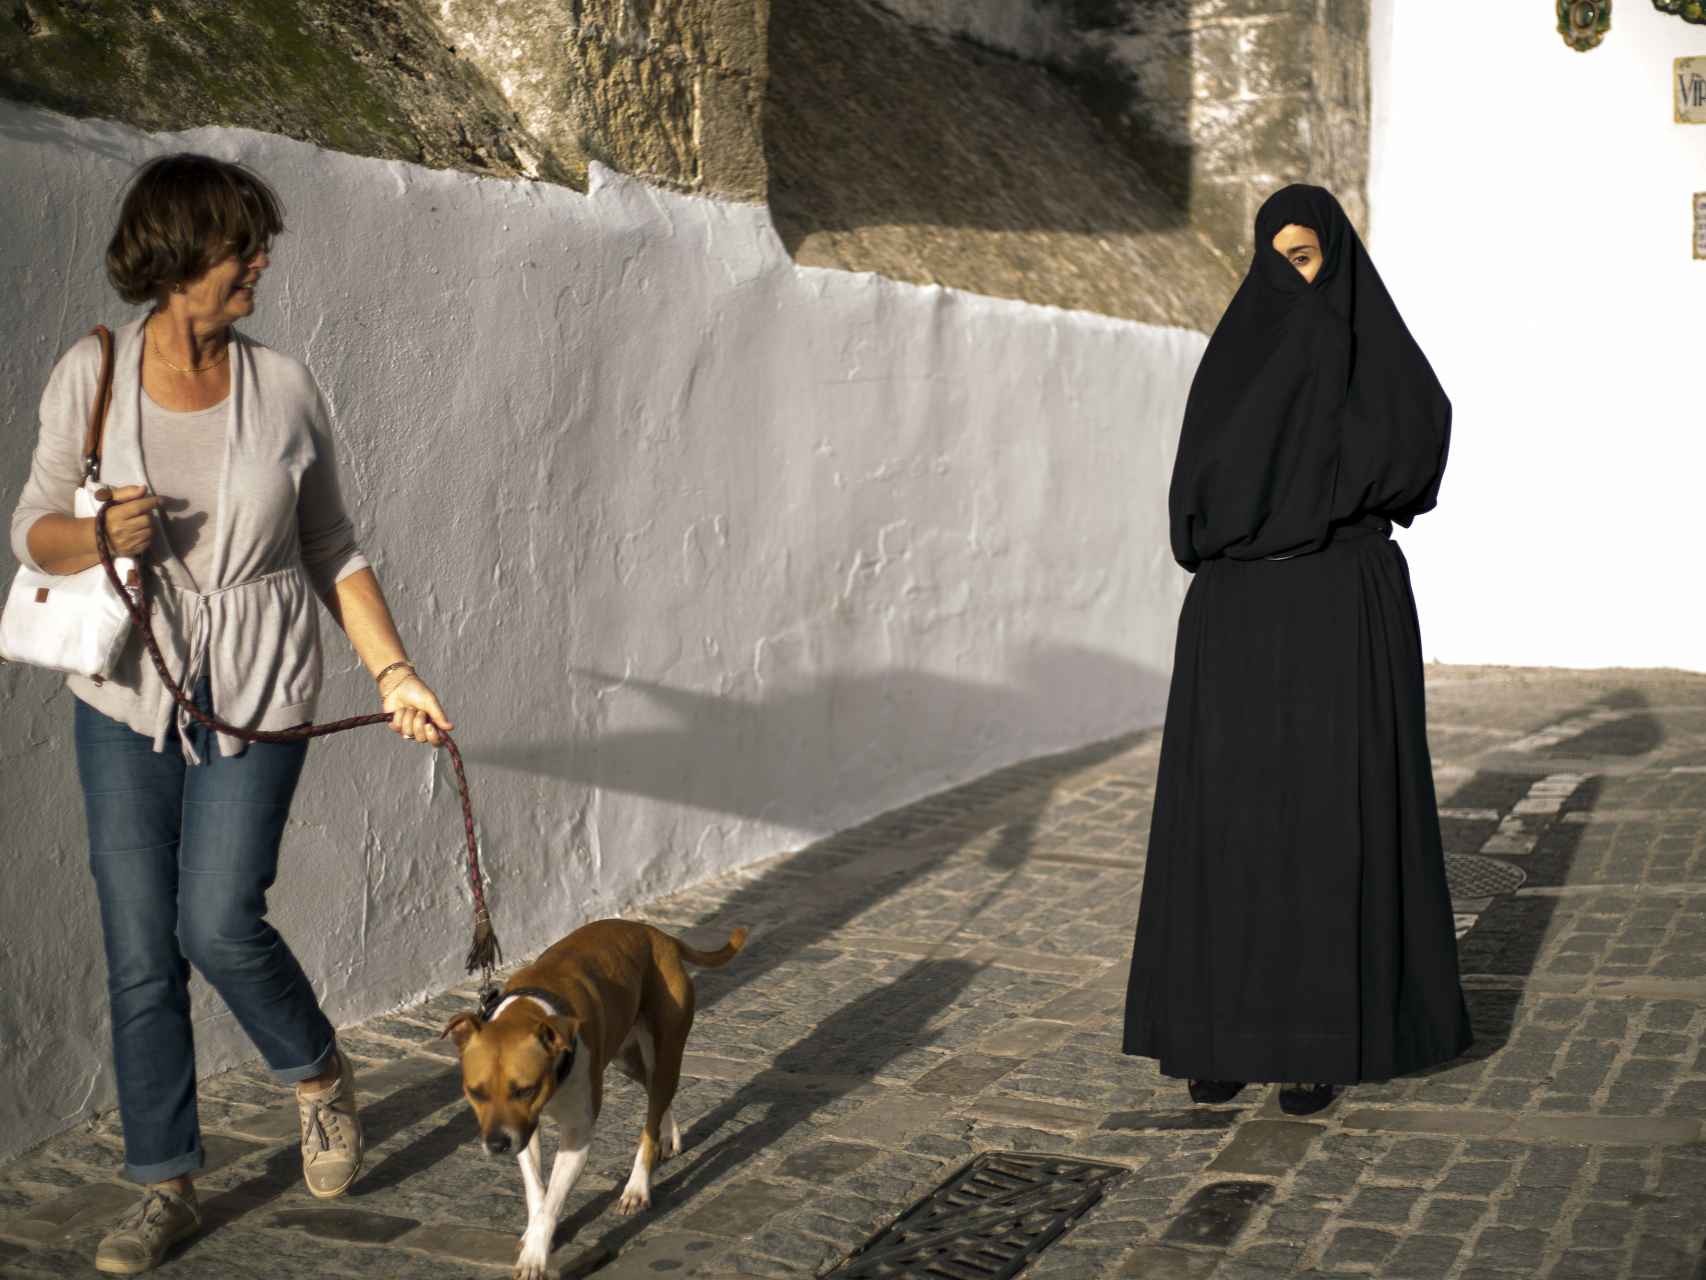 Los turistas que llegan al pueblo se sorprenden por el parecido del atuendo al burka, aunque sus orígenes son dispares. Entre la población local se ve con normalidad.